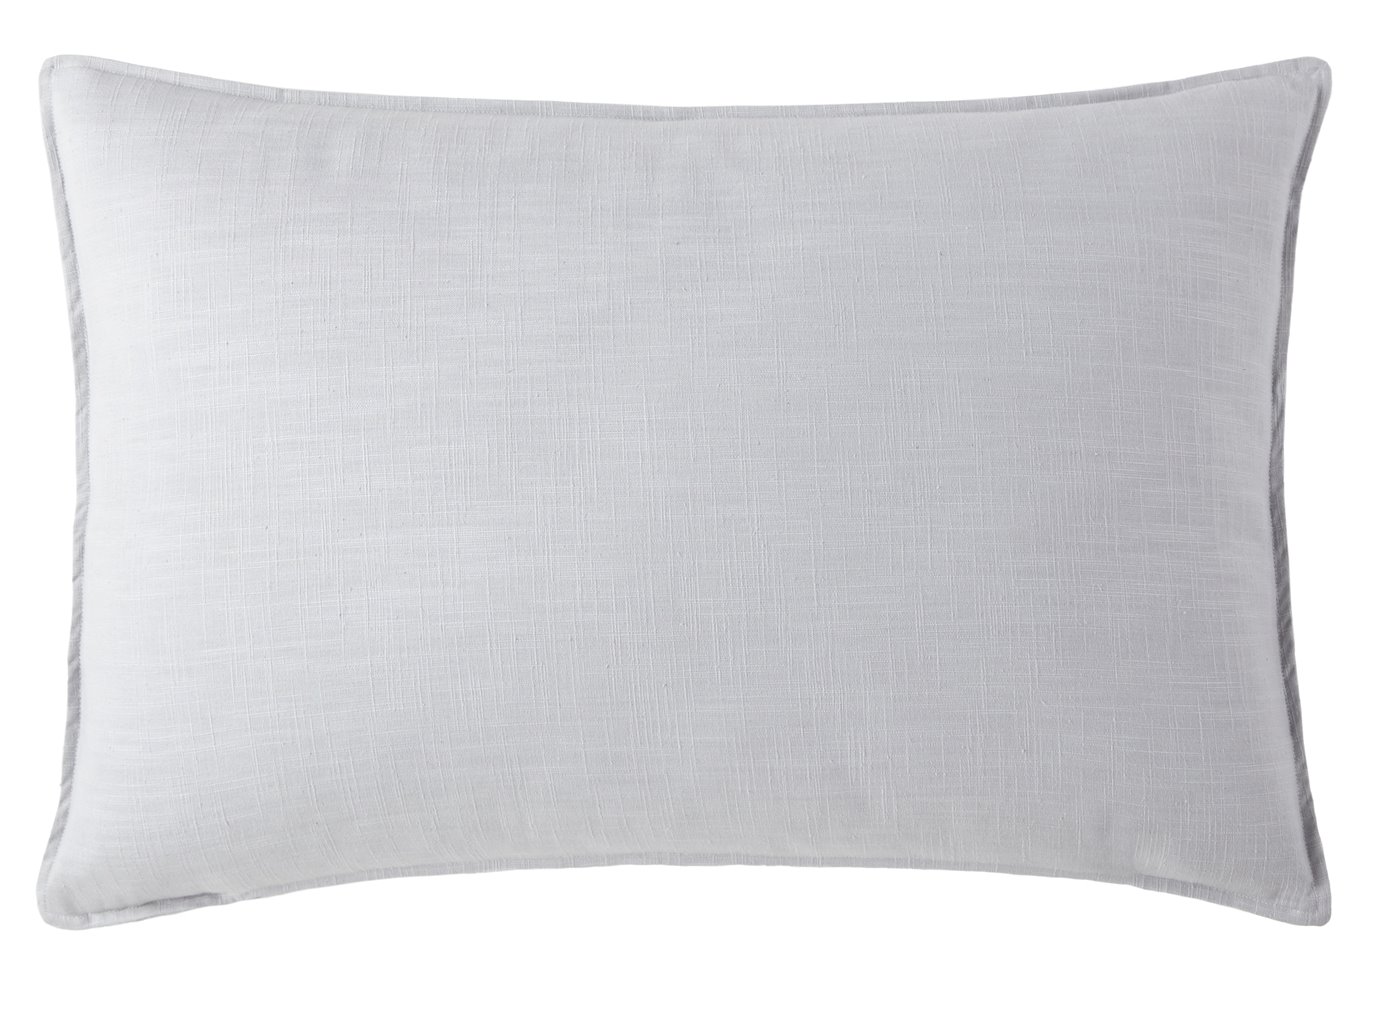 Cambric Gray Pillow Sham Standard/Queen